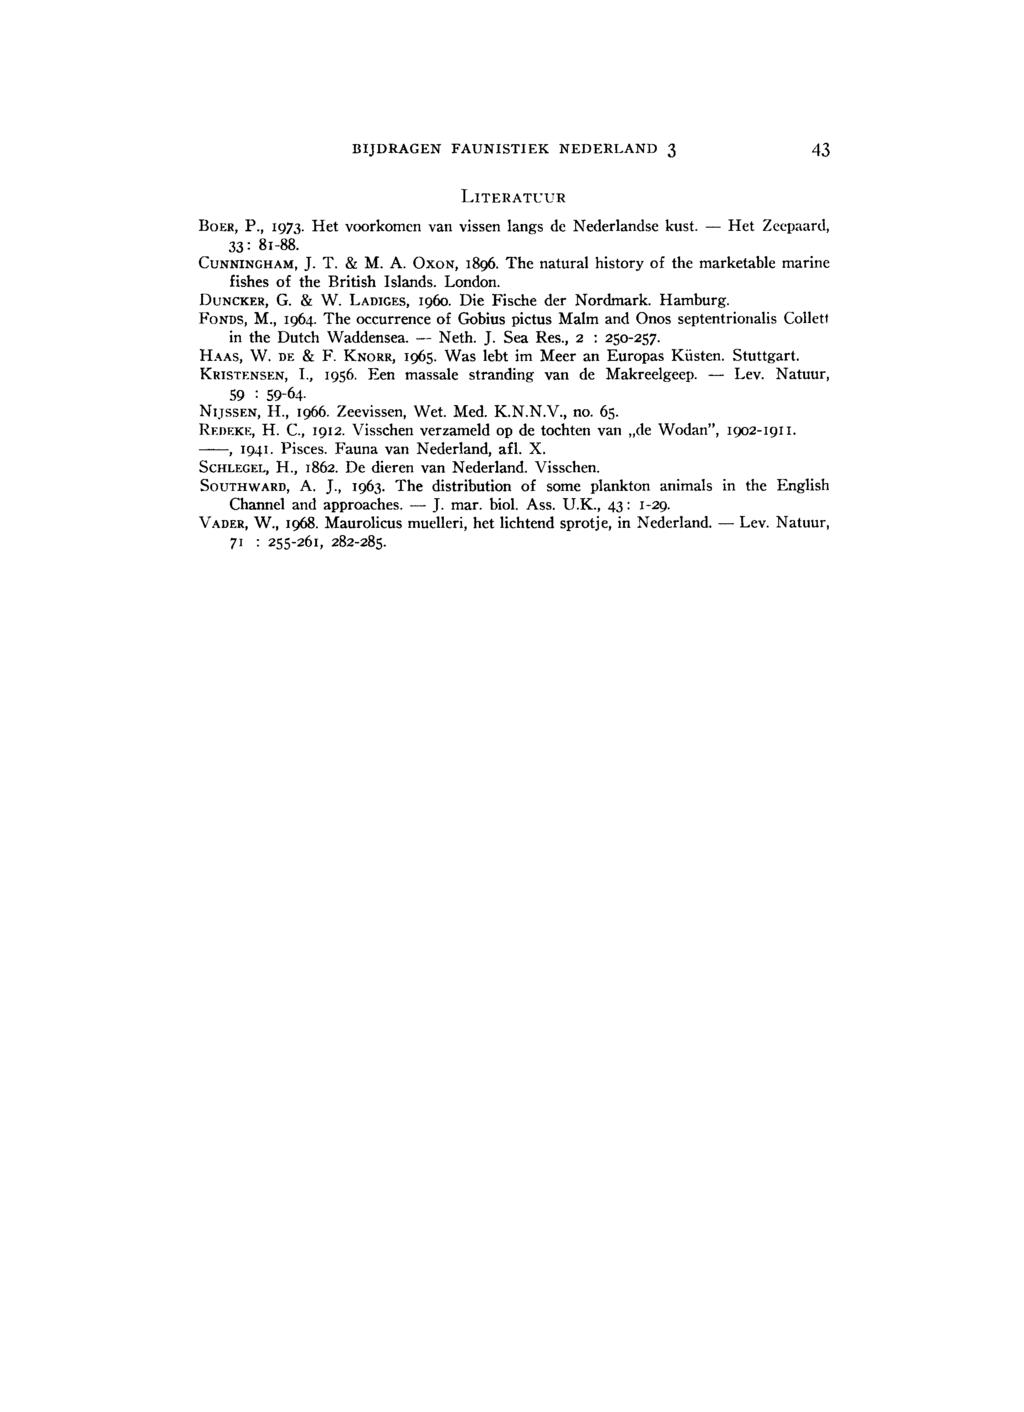 BIJDRAGEN FAUNISTIEK NEDERLAND 3 43 LITERATUUR BOER, P., 1973. Het voorkomen van vissen langs de Nederlandse kust. Het Zeepaard, 33: 81 88. CUNNINGHAM, J. T. & M. A. OXON, 1896.